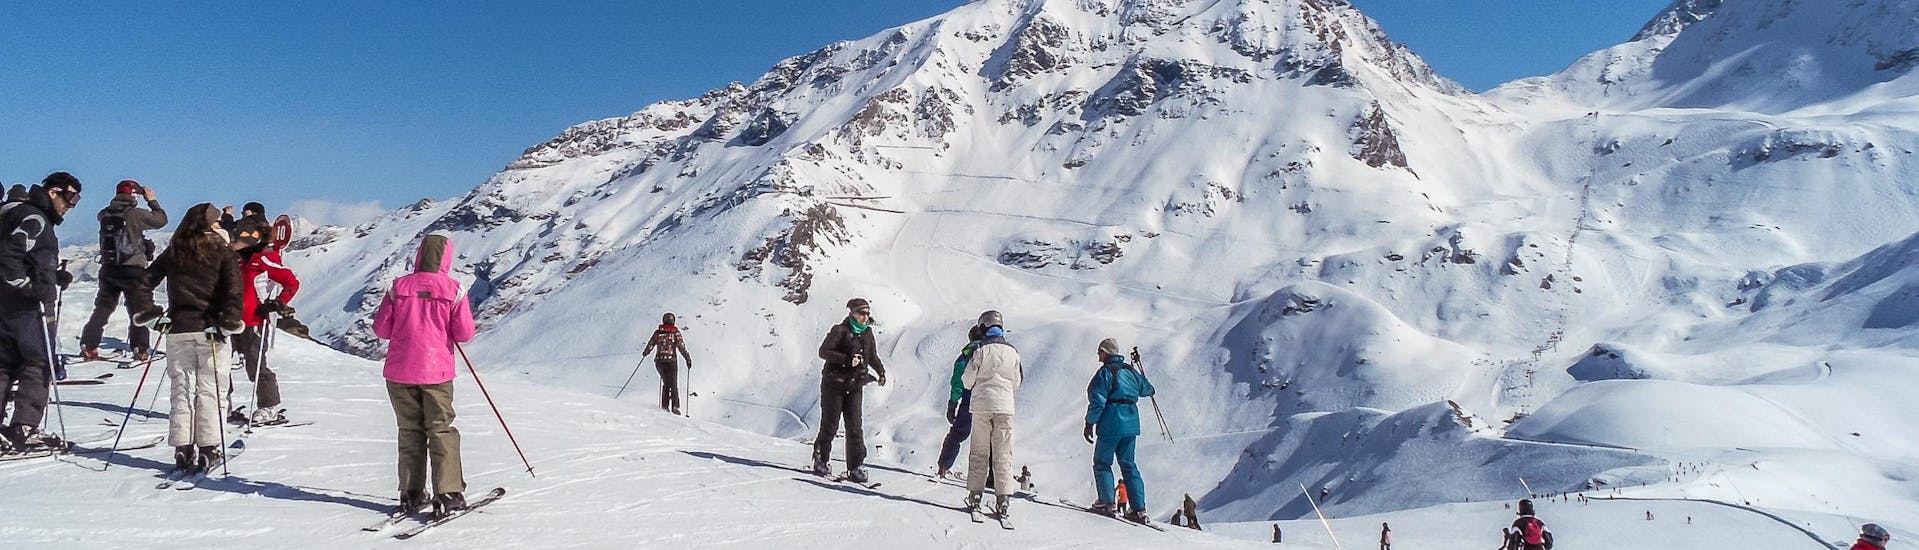 Adultos y niños esquiando en la estación de esquí de Les Arcs.